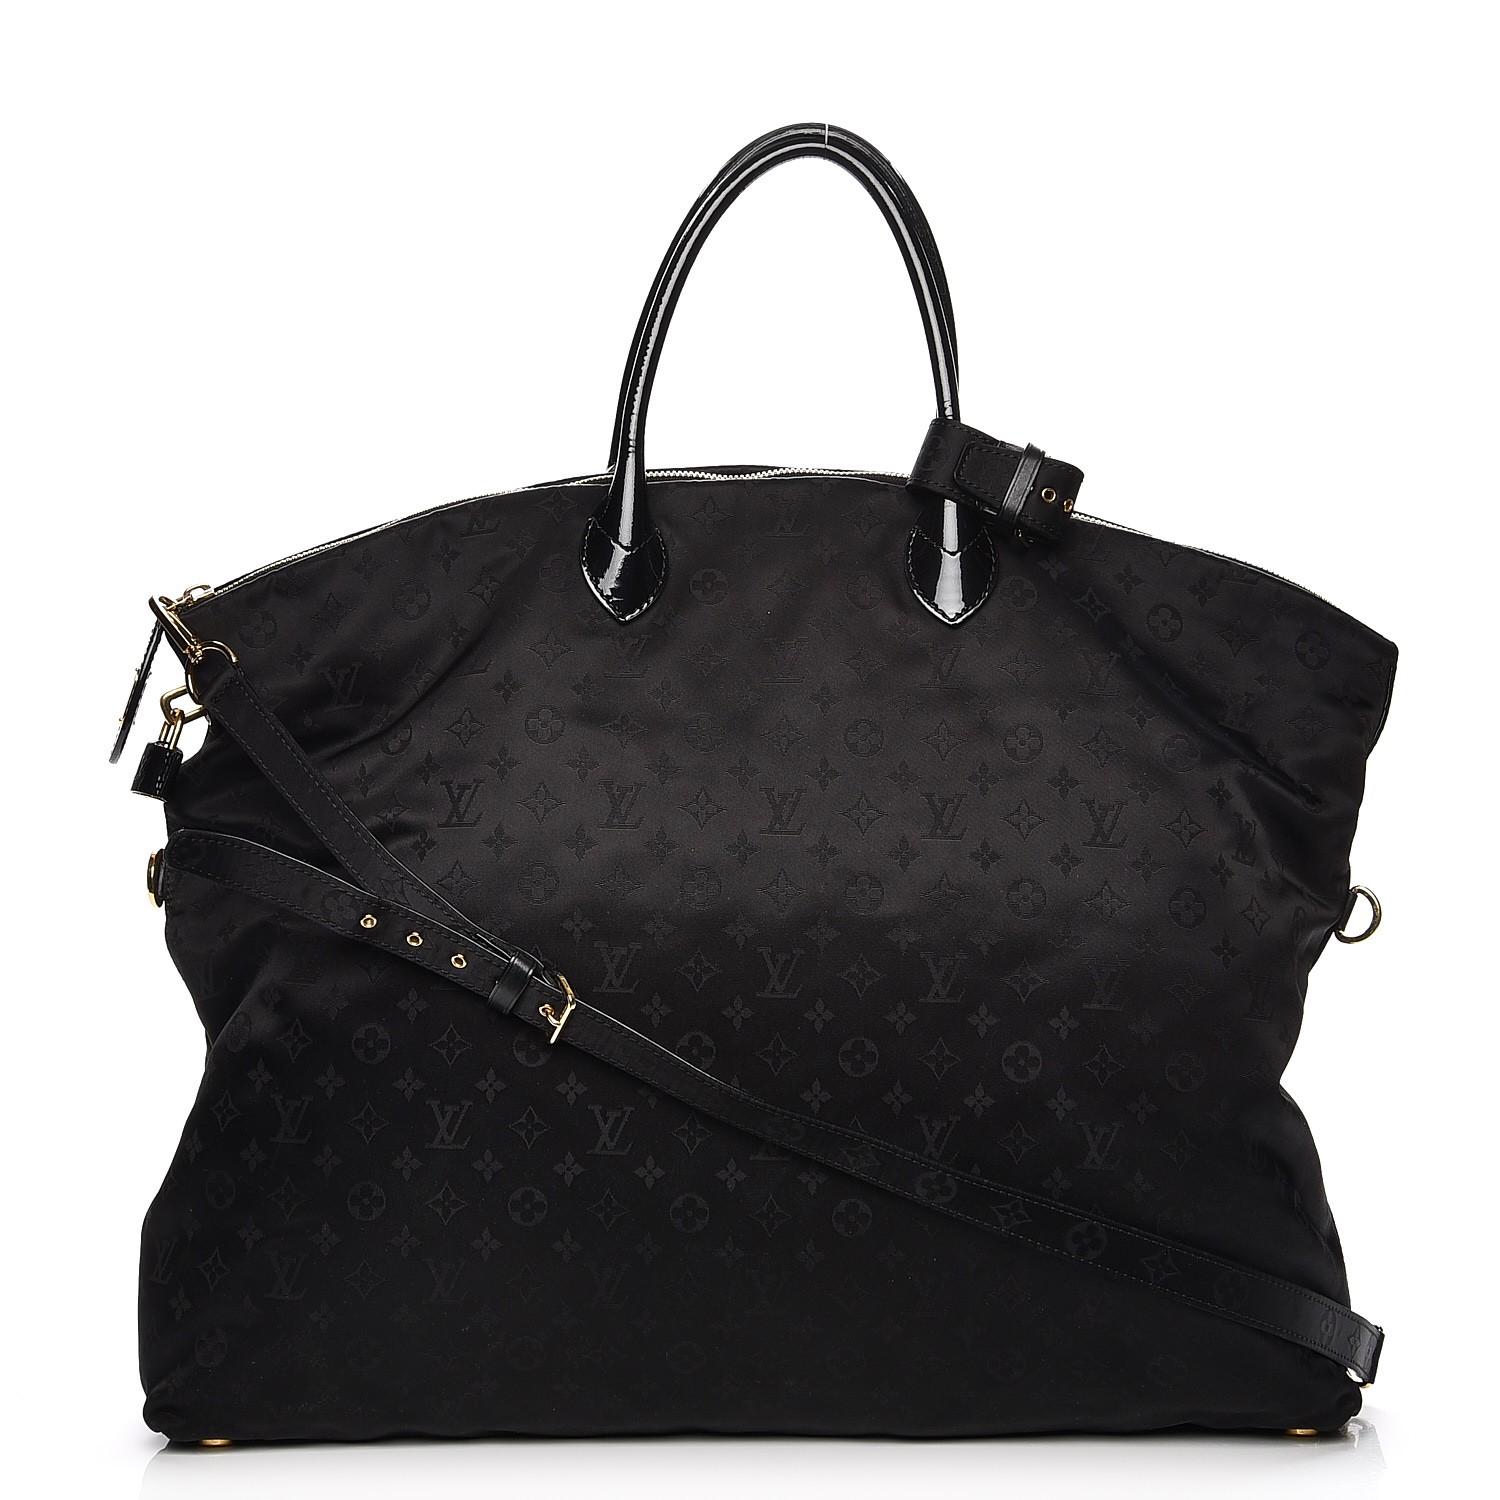 Louis Vuitton Monogram Canvas Lockit Bag Reinvented